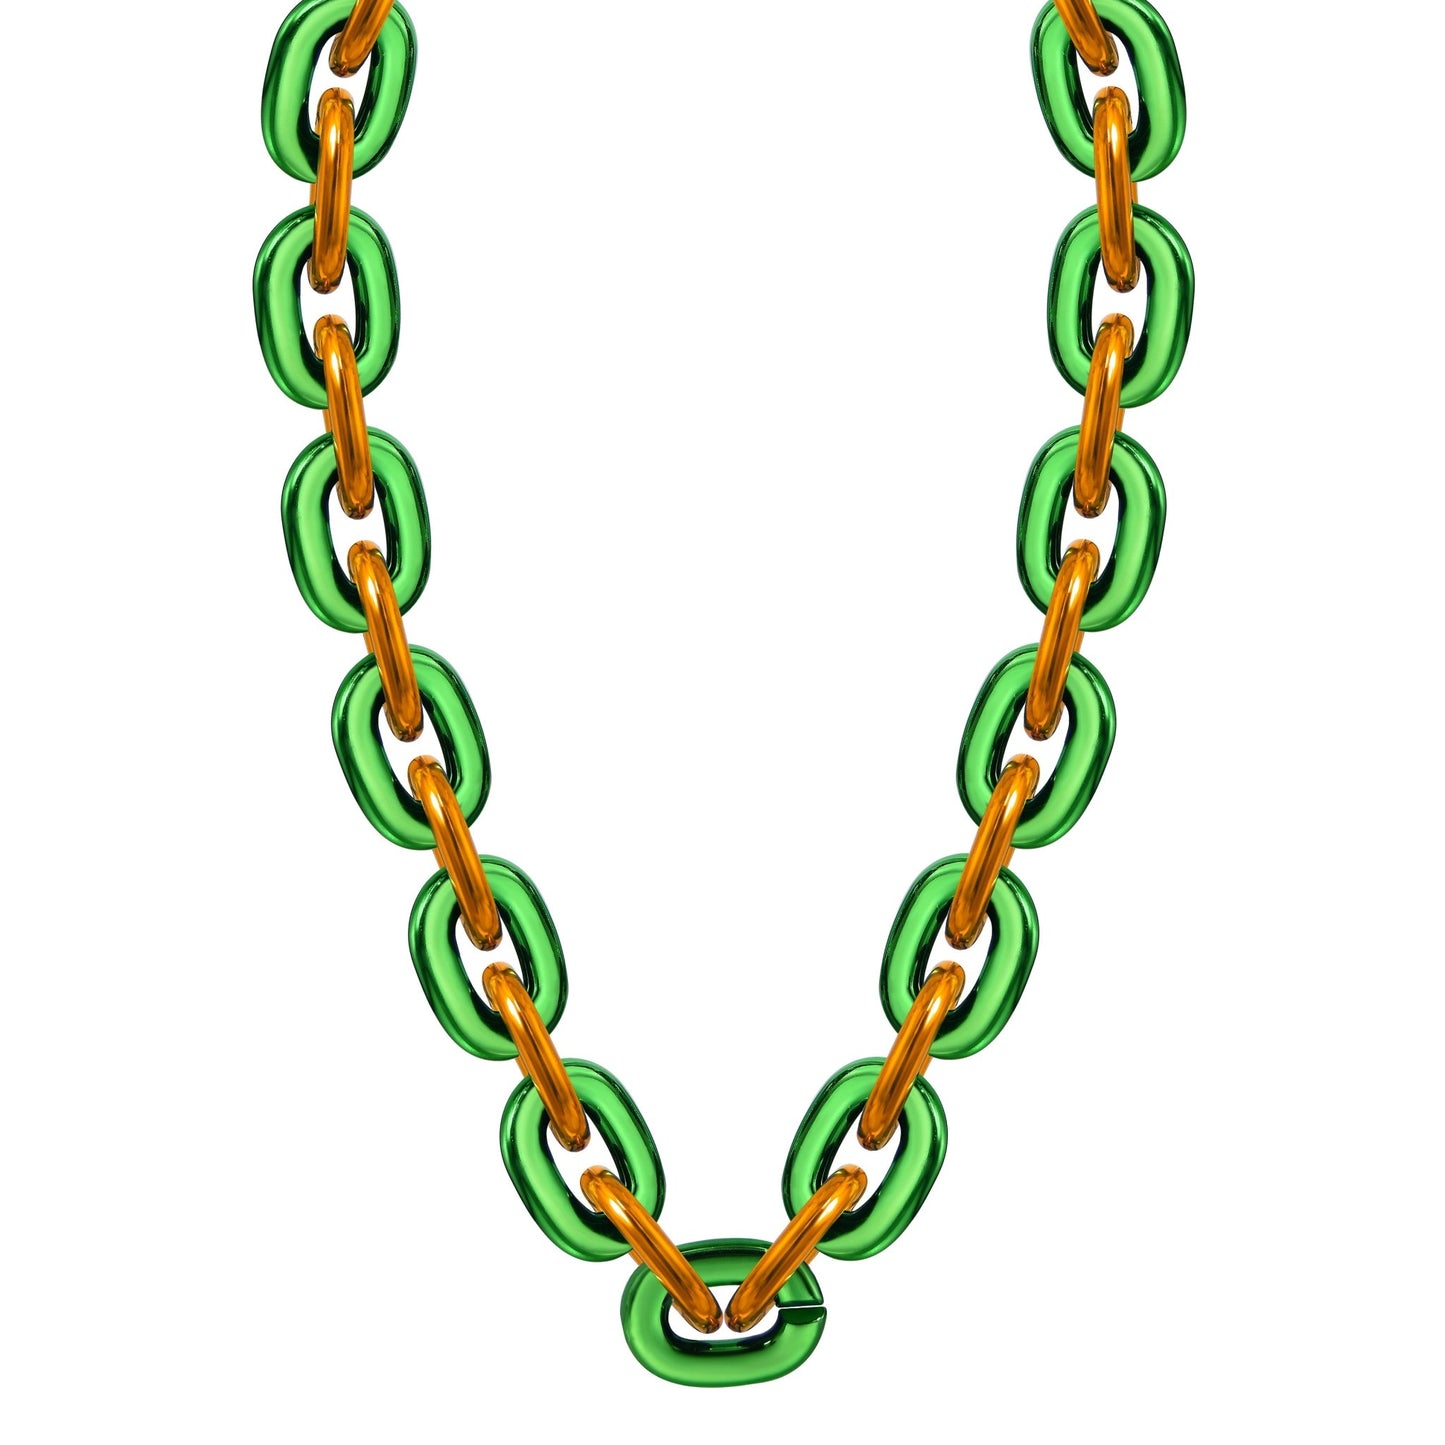 Jumbo Fan Chain Necklace - Gamedays Gear - Green / Orange